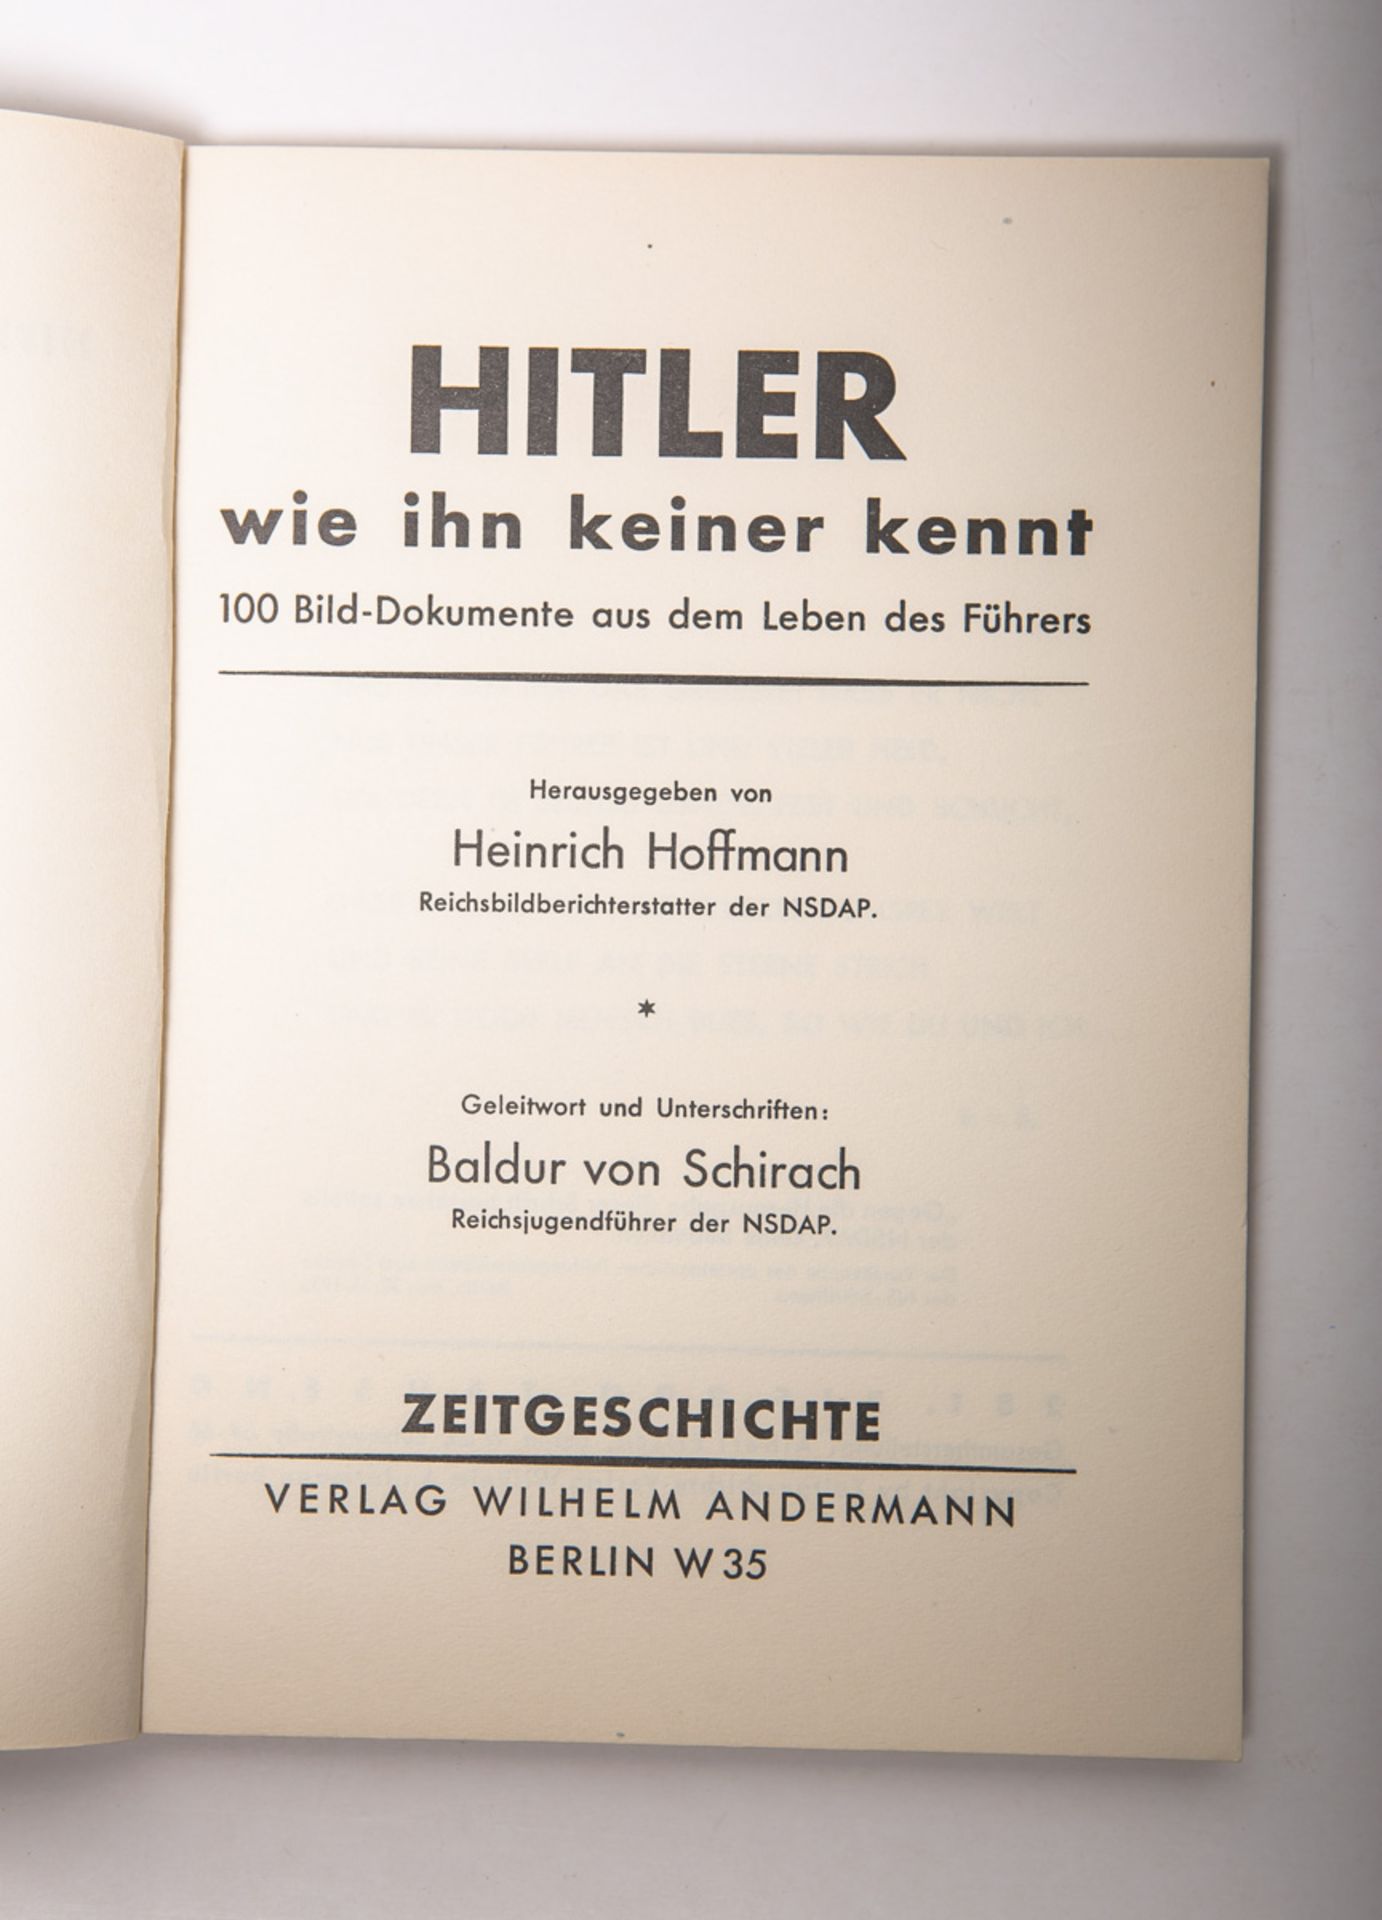 Hoffmann, Heinrich (Hrsg.), "Hitler wie ihn keiner kennt" - Image 4 of 4